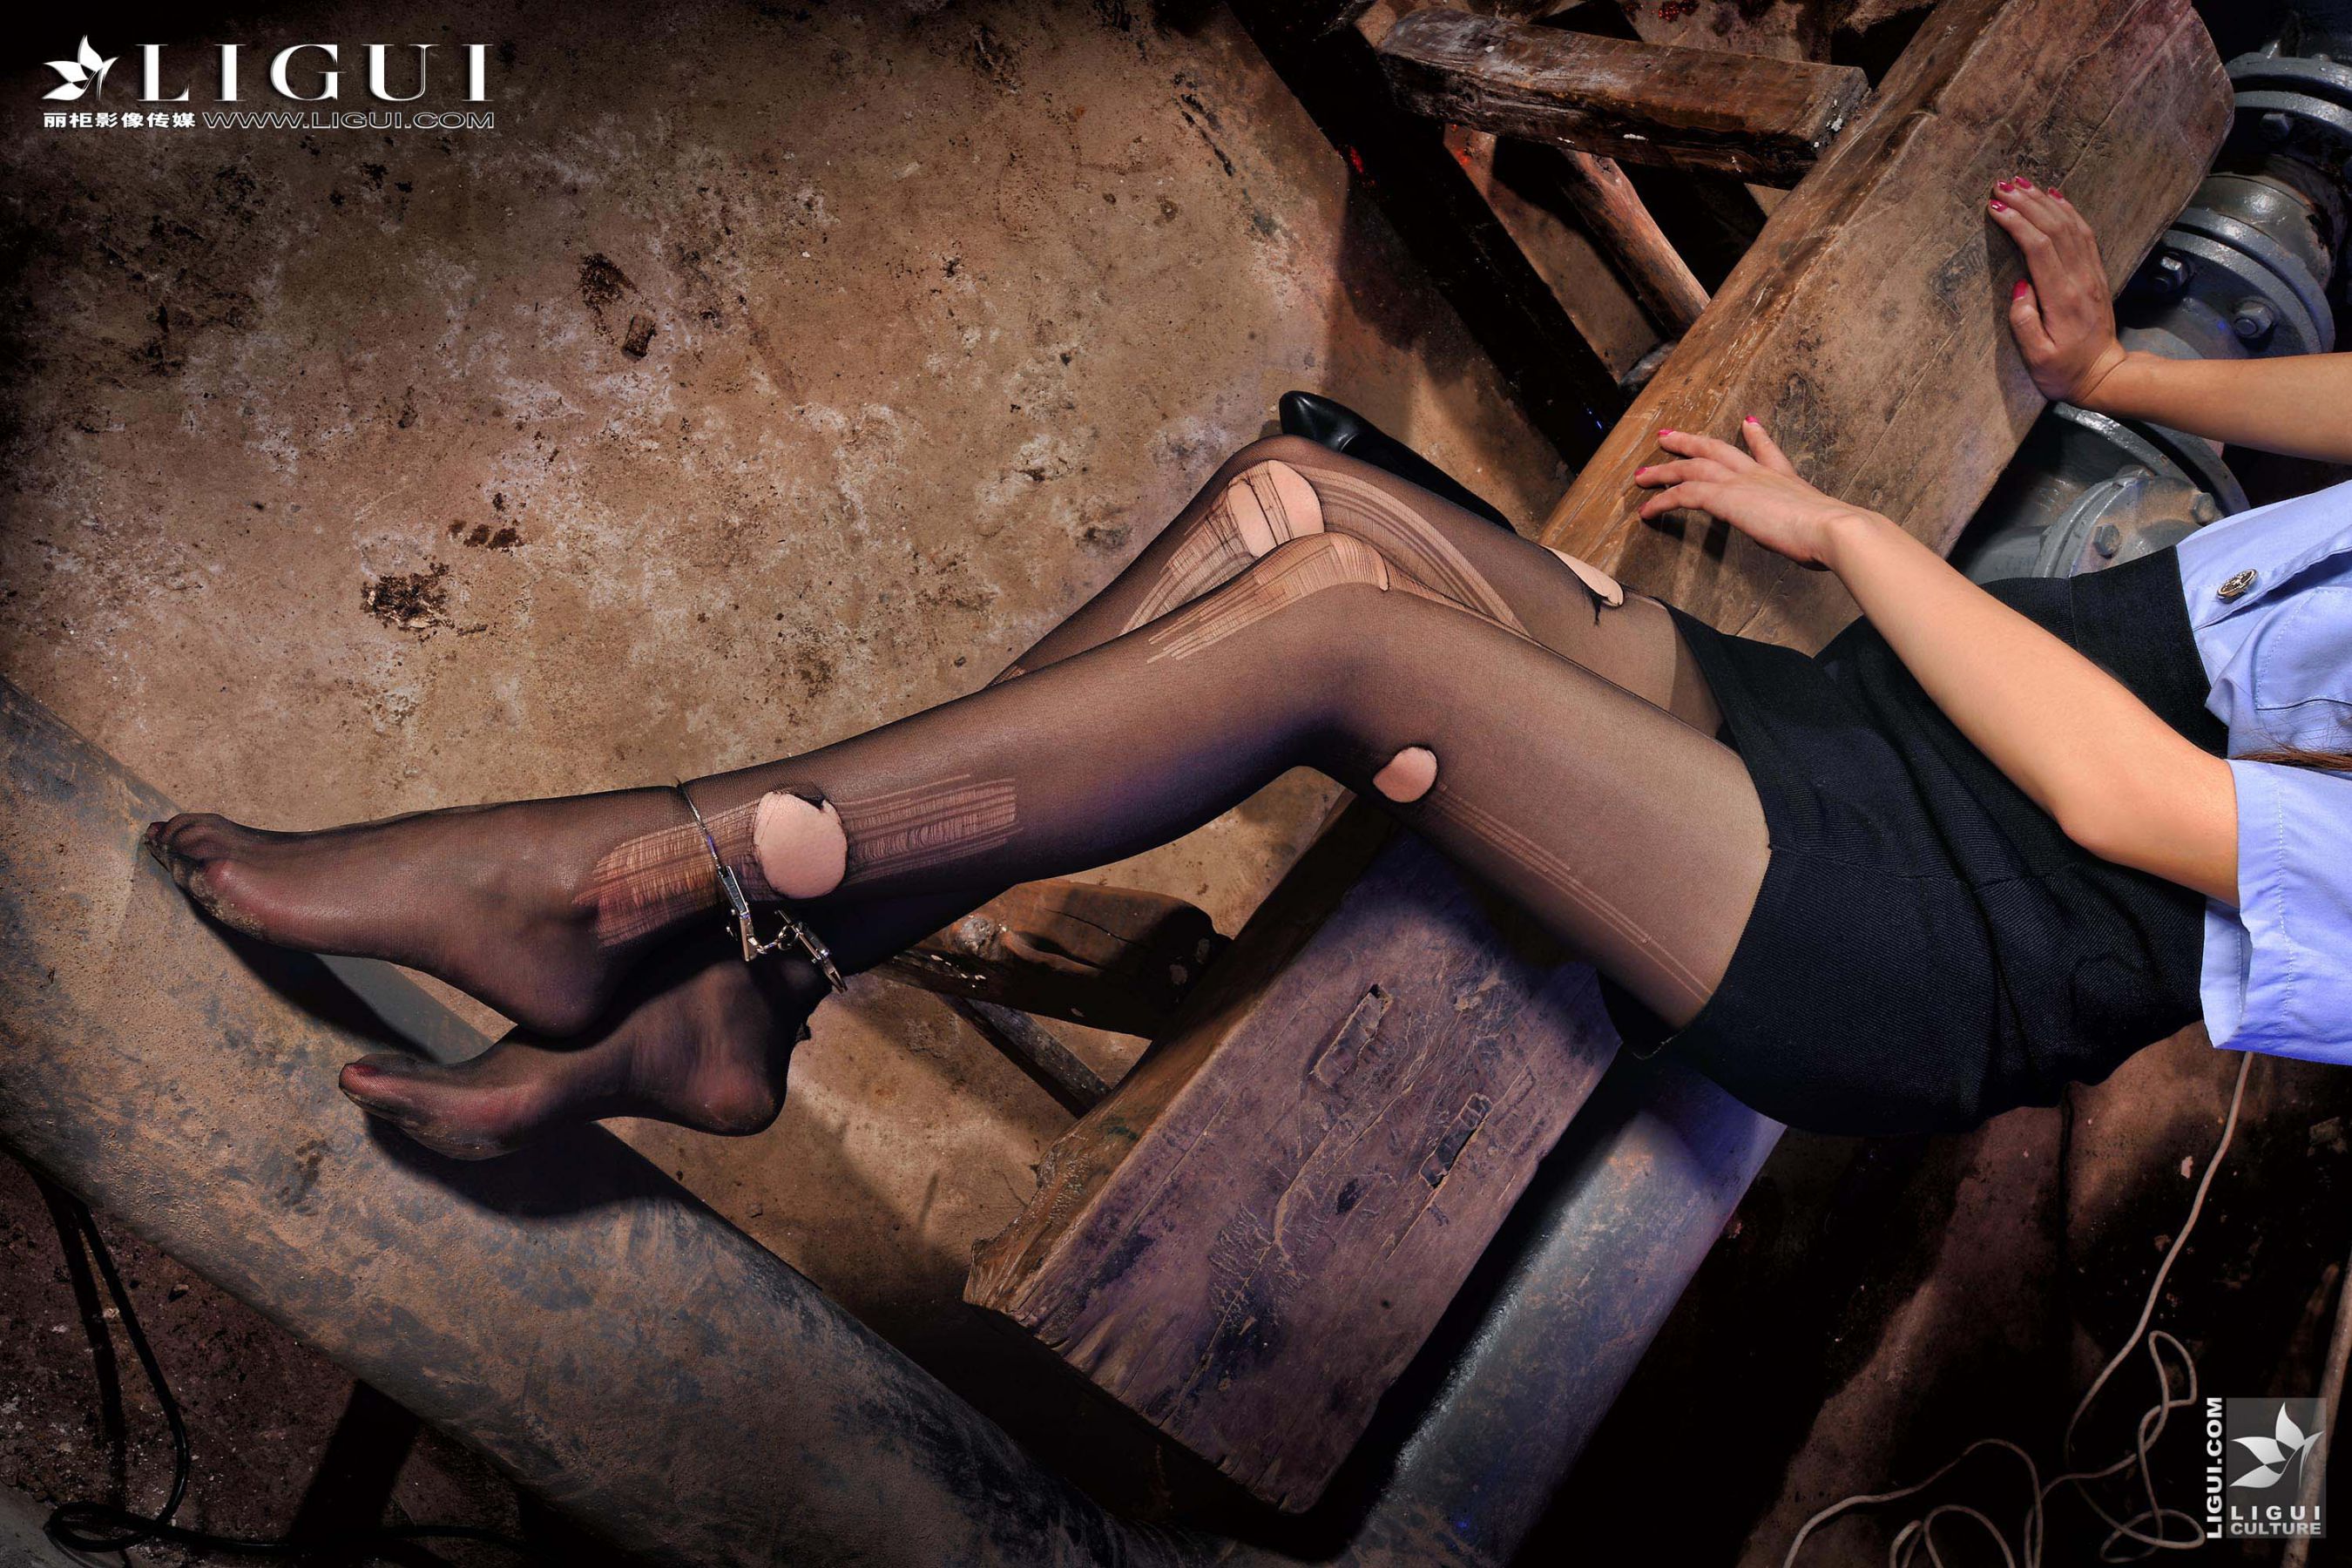 Model 薇薇《黑丝镣铐女警》 [丽柜贵足LiGui] 美腿丝足写真图片  第11张